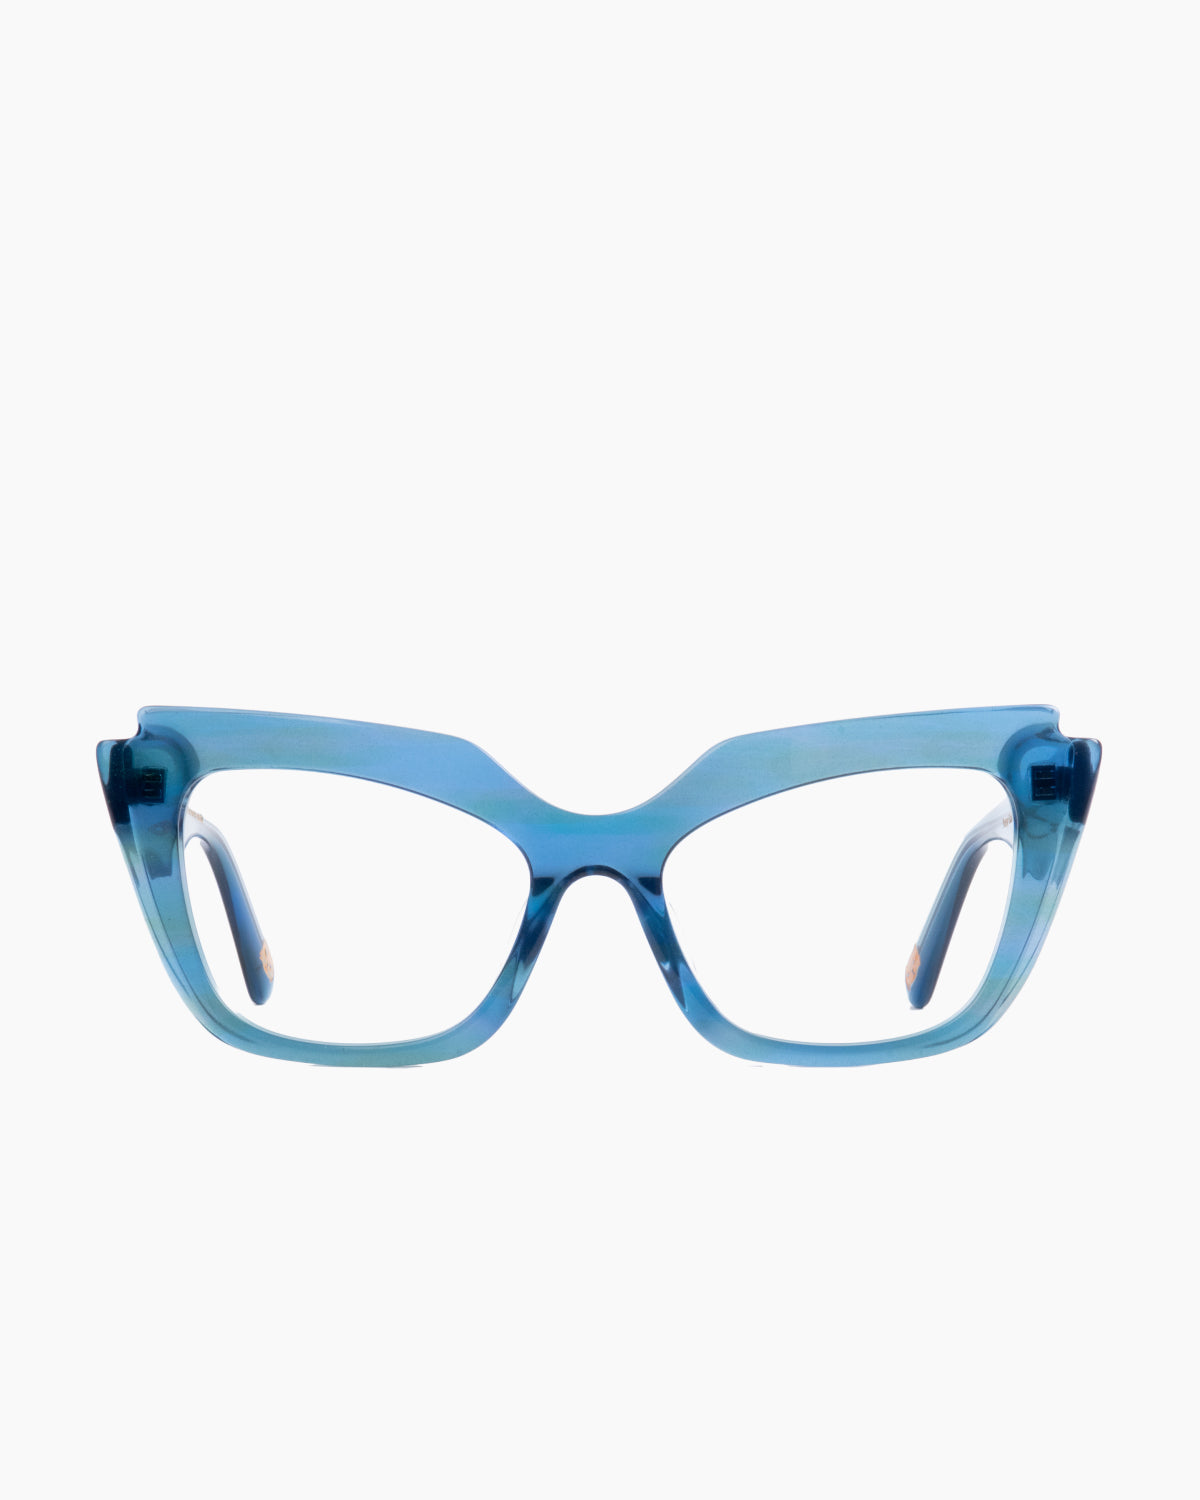 Spectacleeyeworks - parisa - c456 | Bar à lunettes